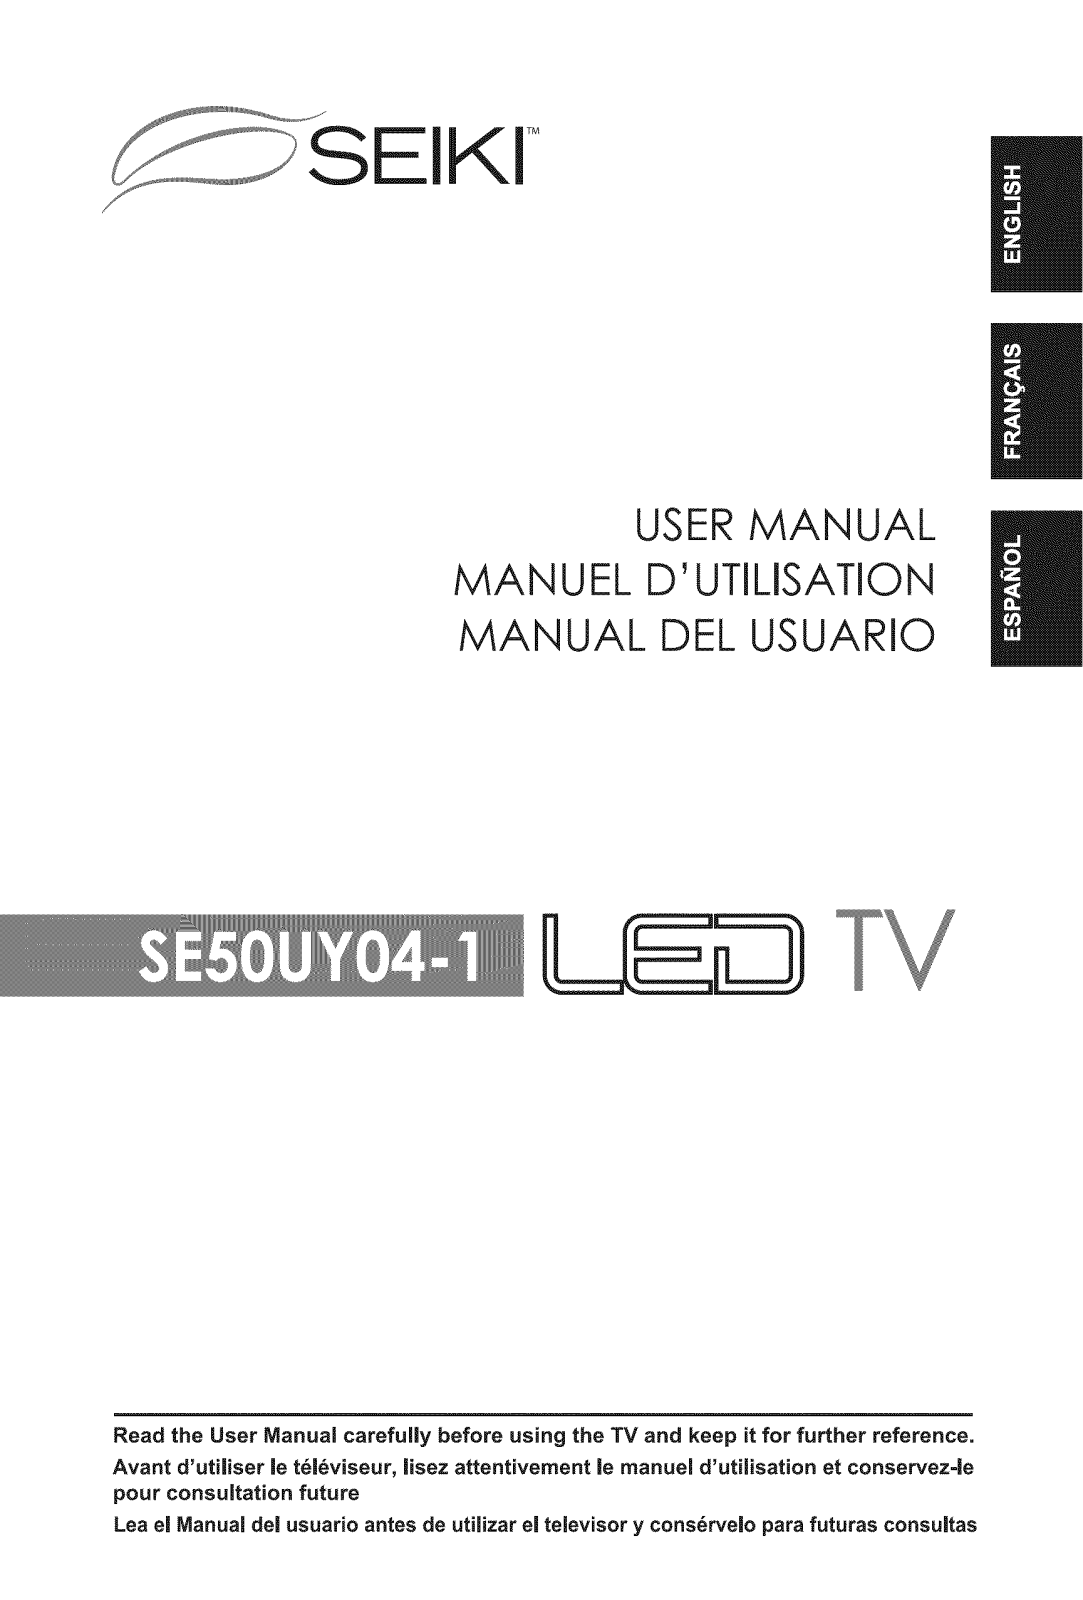 Seiki SE50UY04-1 Owner’s Manual